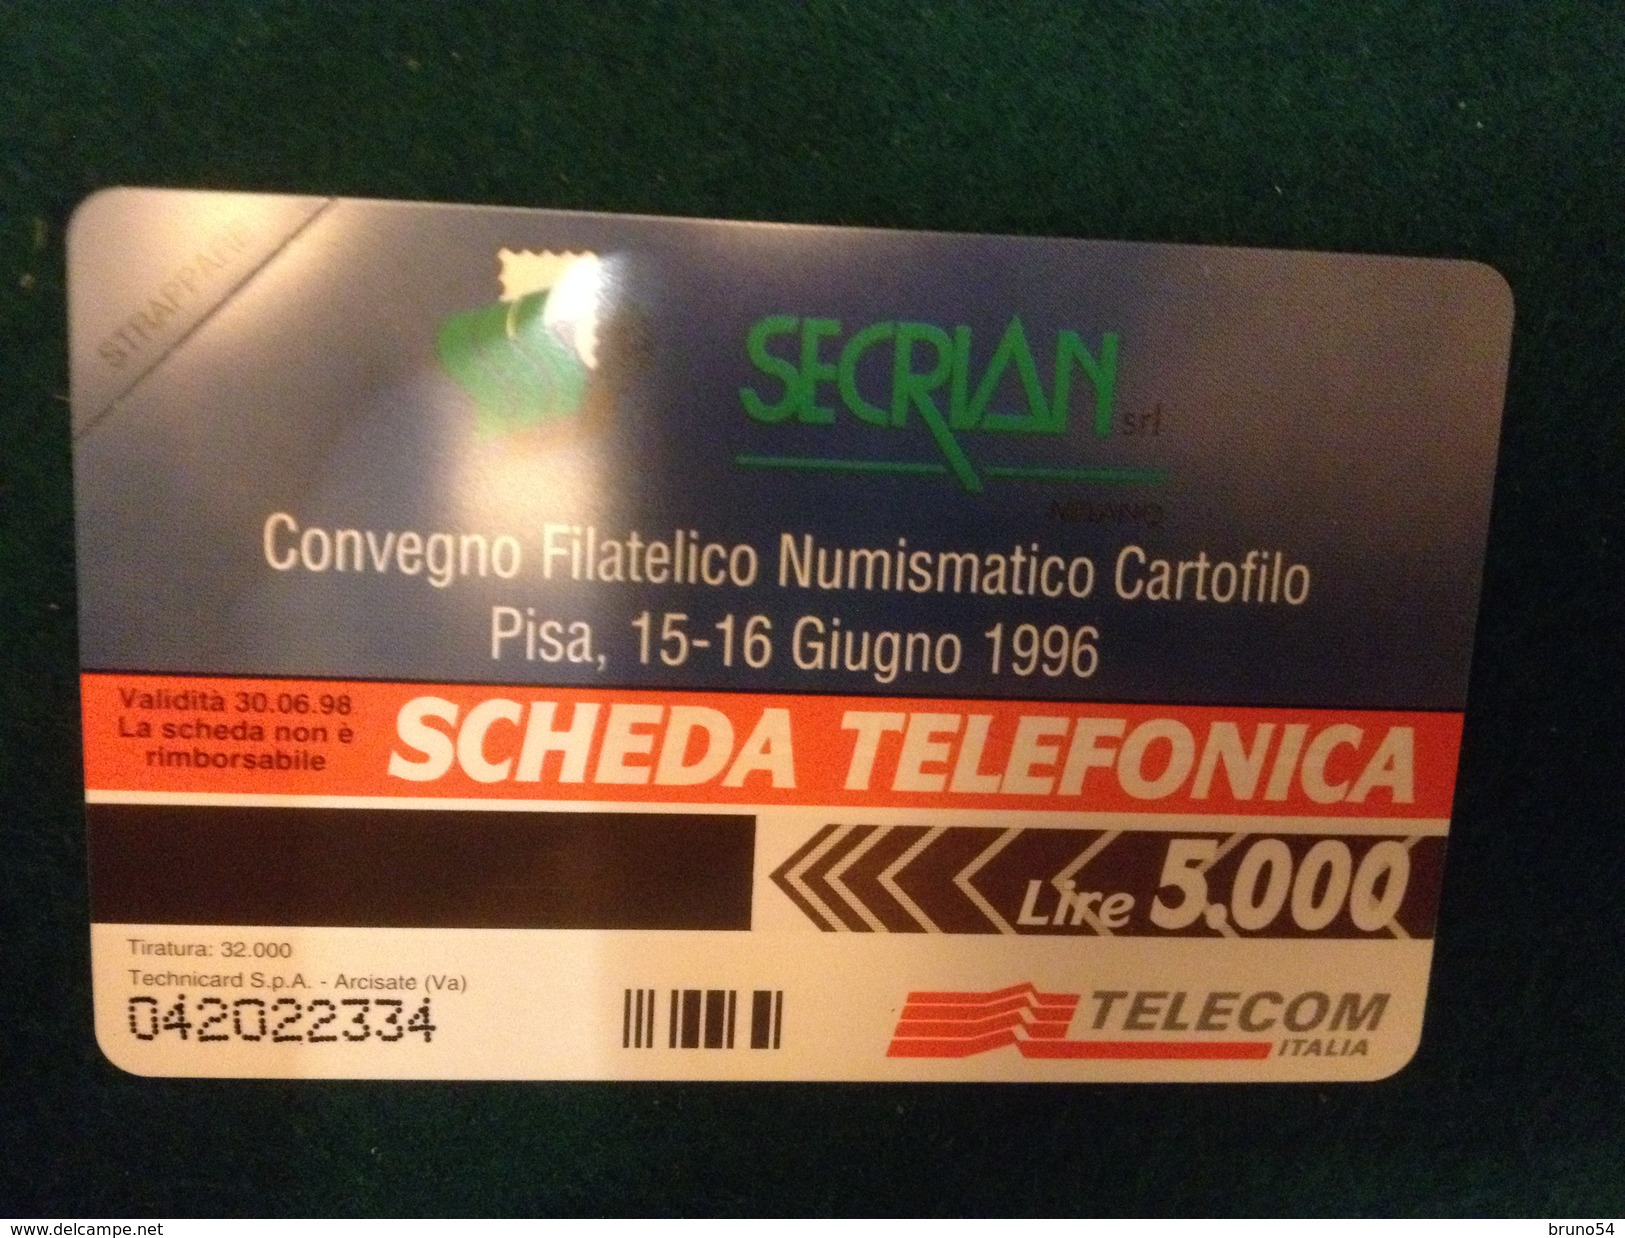 Scheda Telefonica Golden 320 Pisa Convegno Filatelico Giugno 1996 Da Lire 5000  A Tiratura  32.000 - Private TK - Reprints